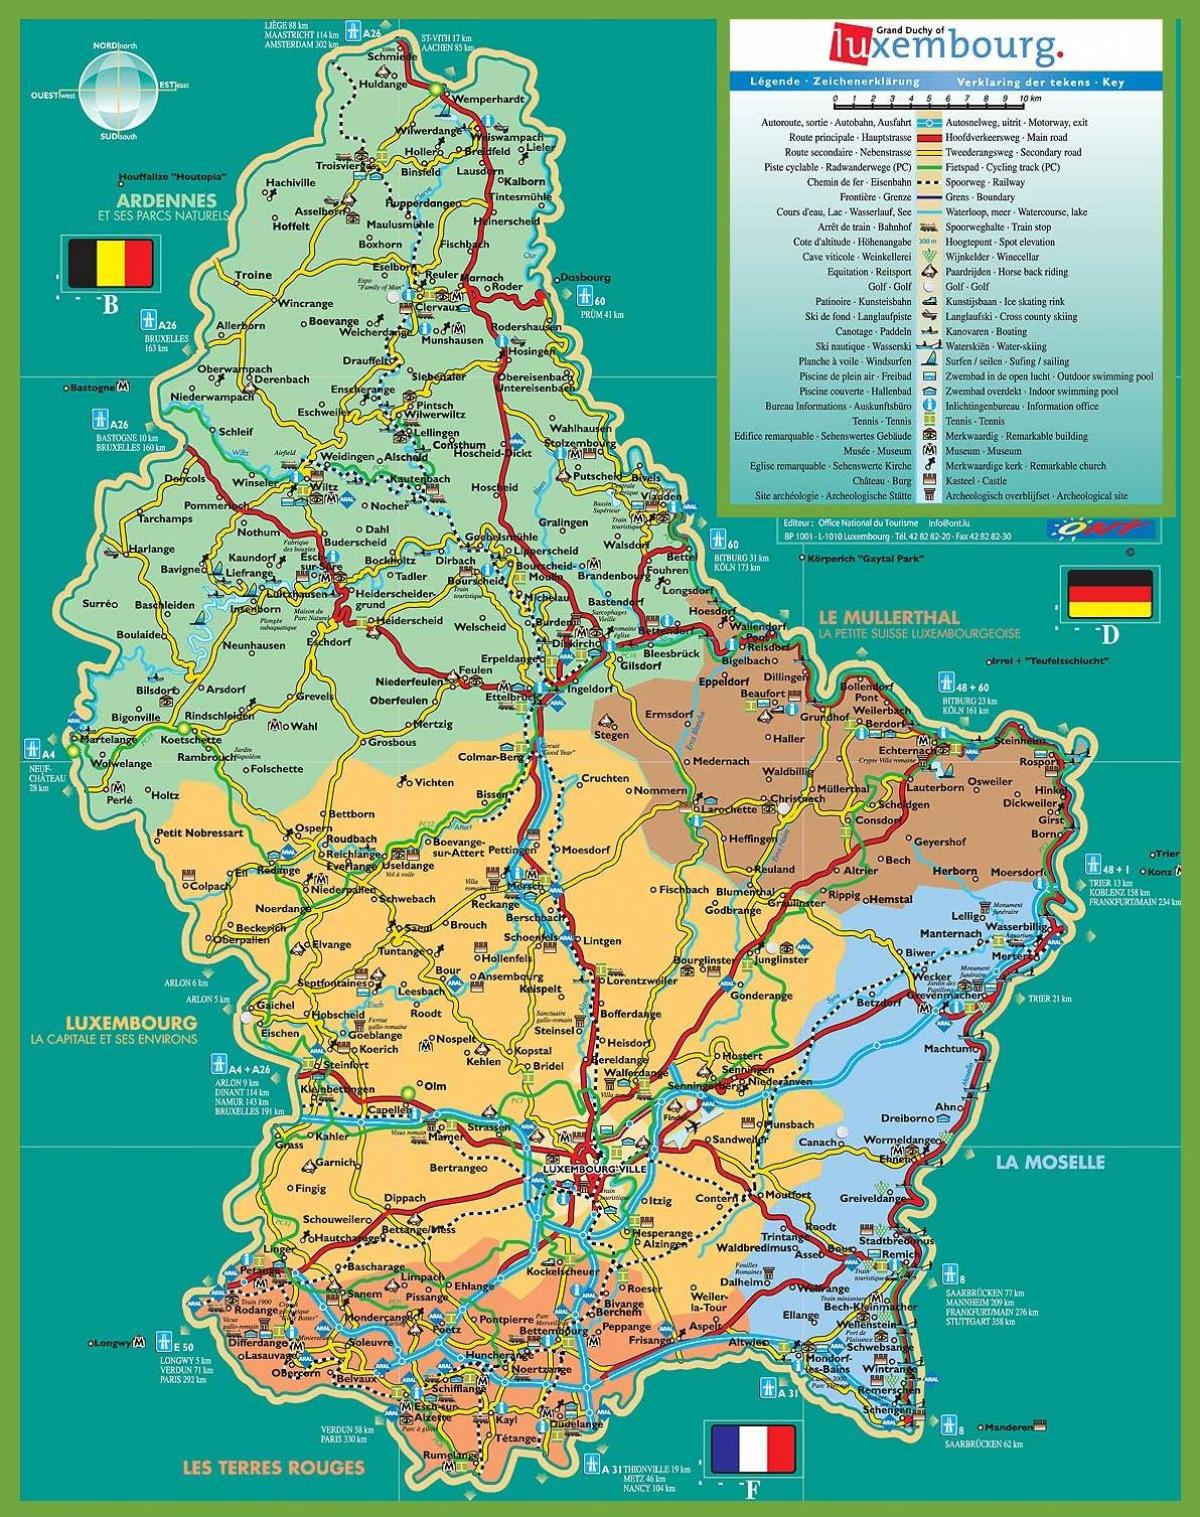 Luksemburgu atrakcije mapu